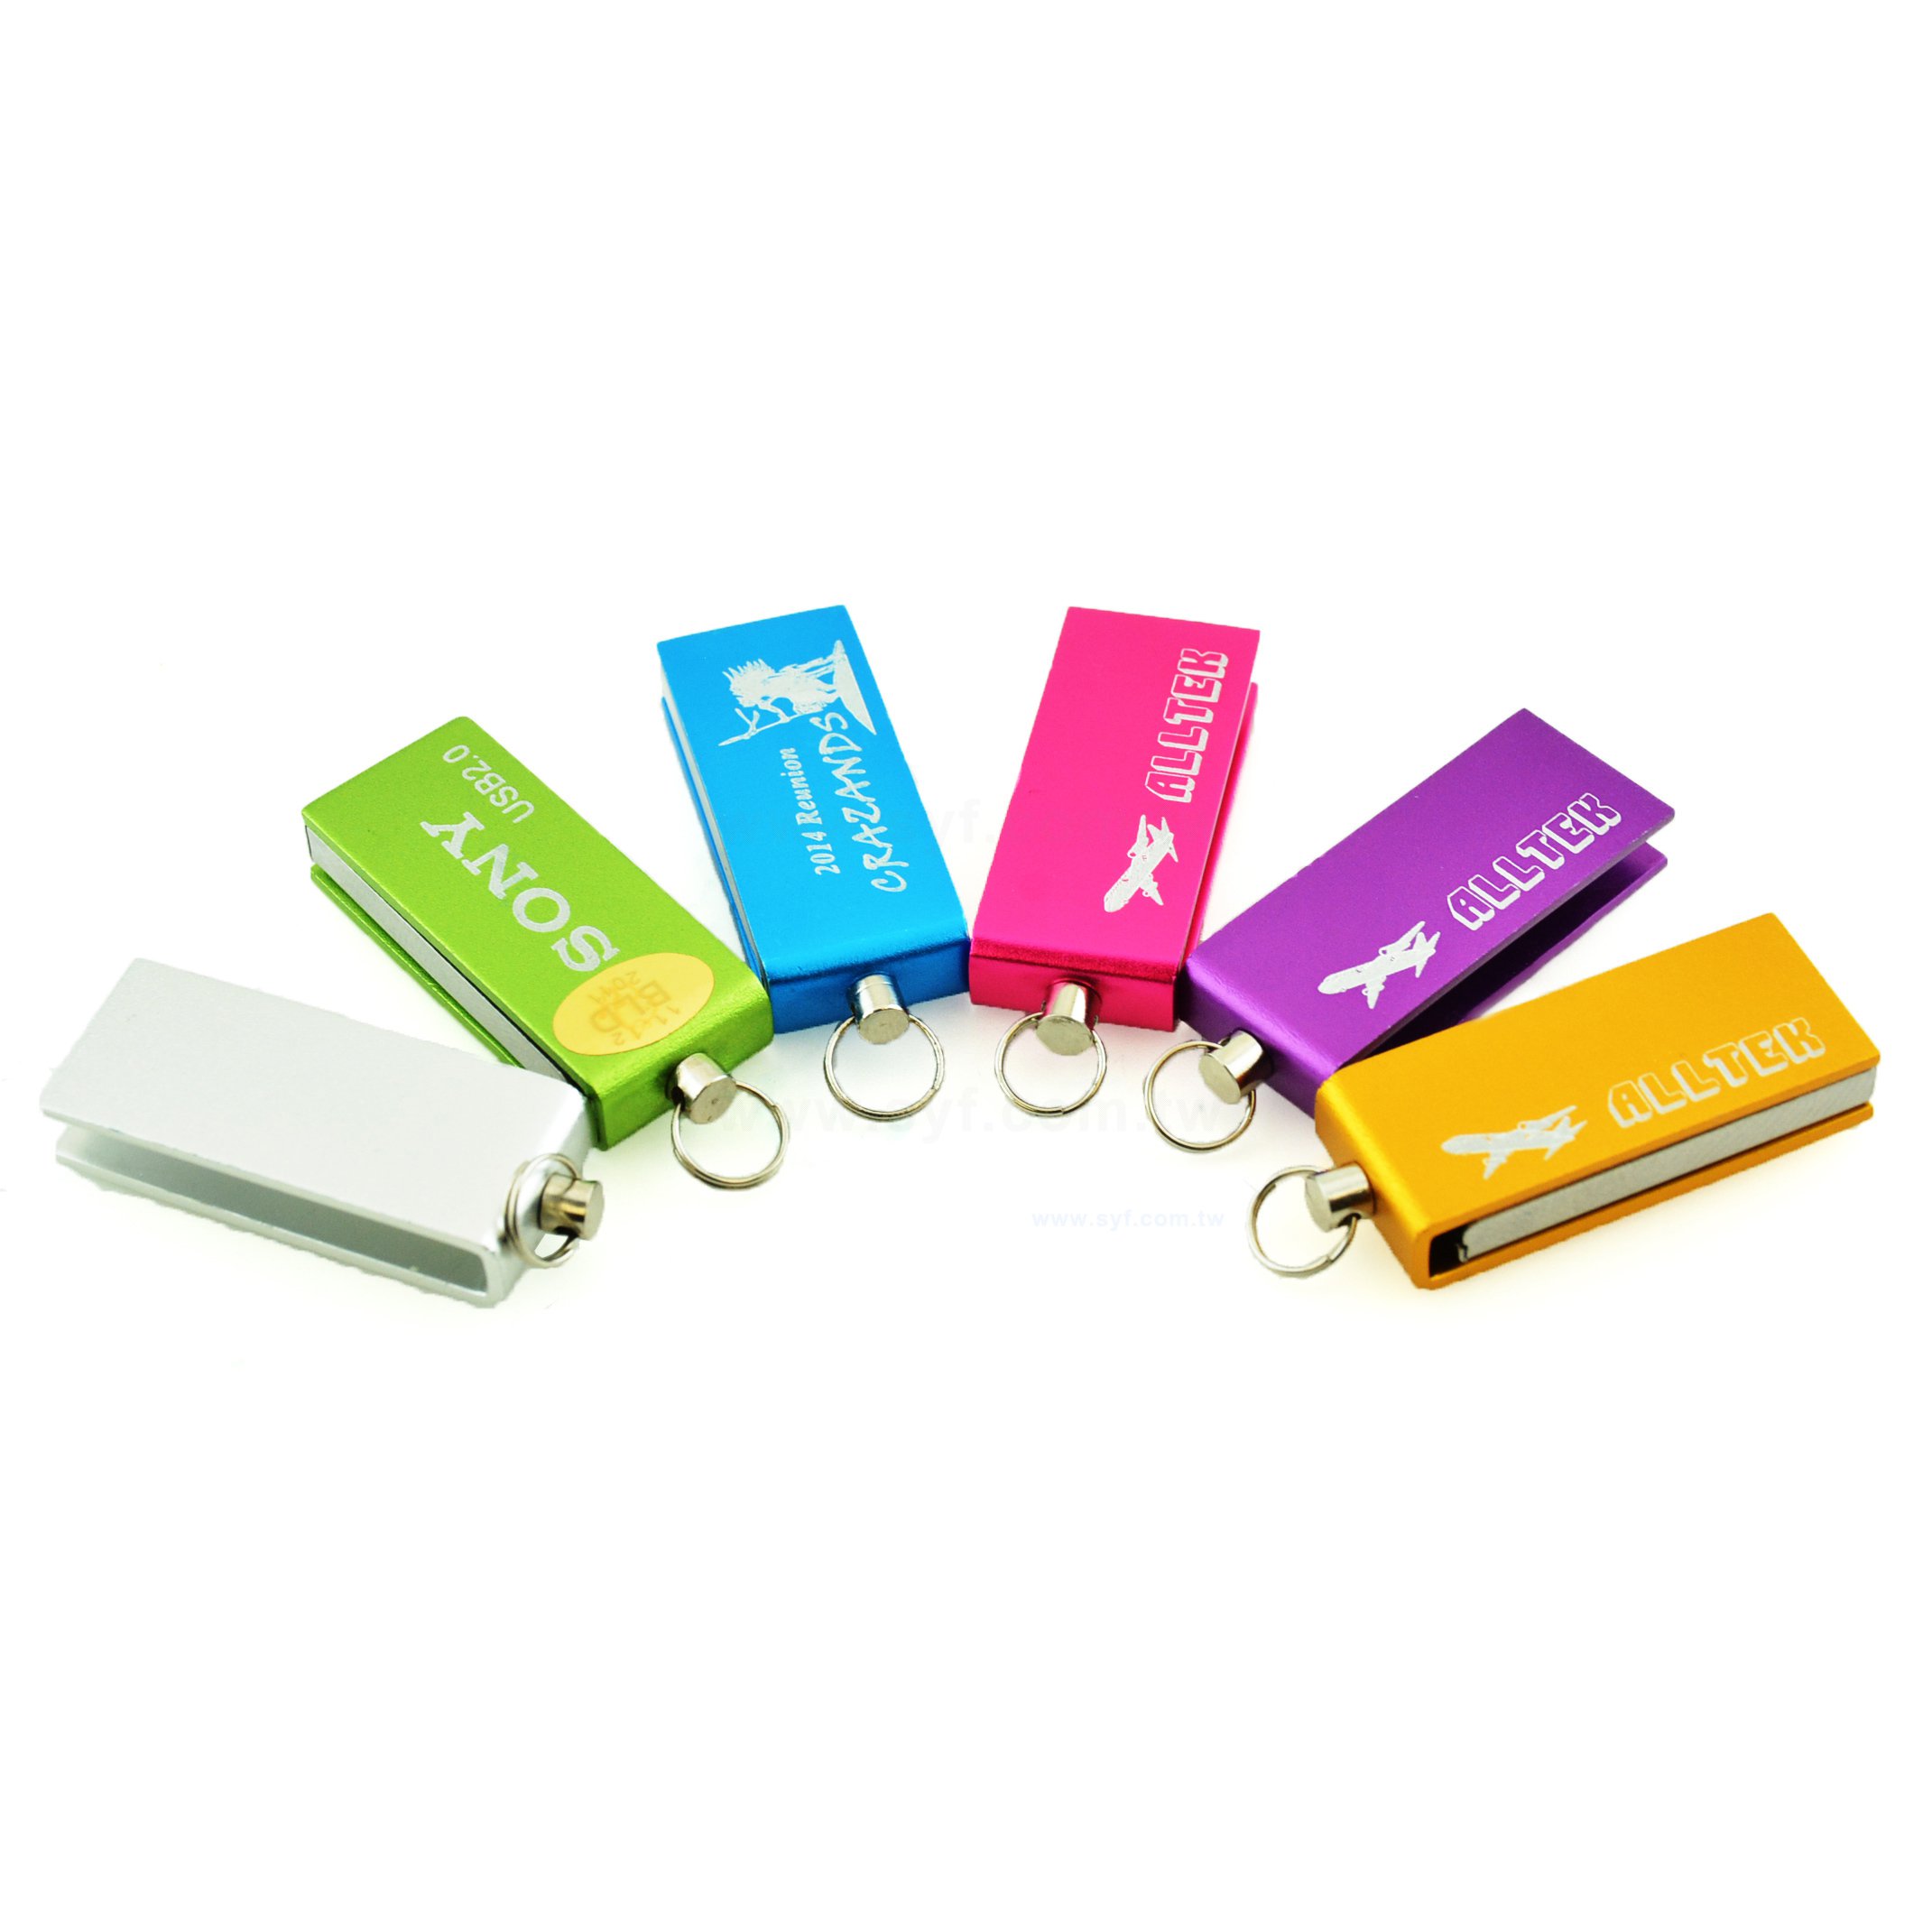 隨身碟-商務禮贈品-旋轉金屬USB隨身碟-客製隨身碟容量-採購推薦股東會贈品